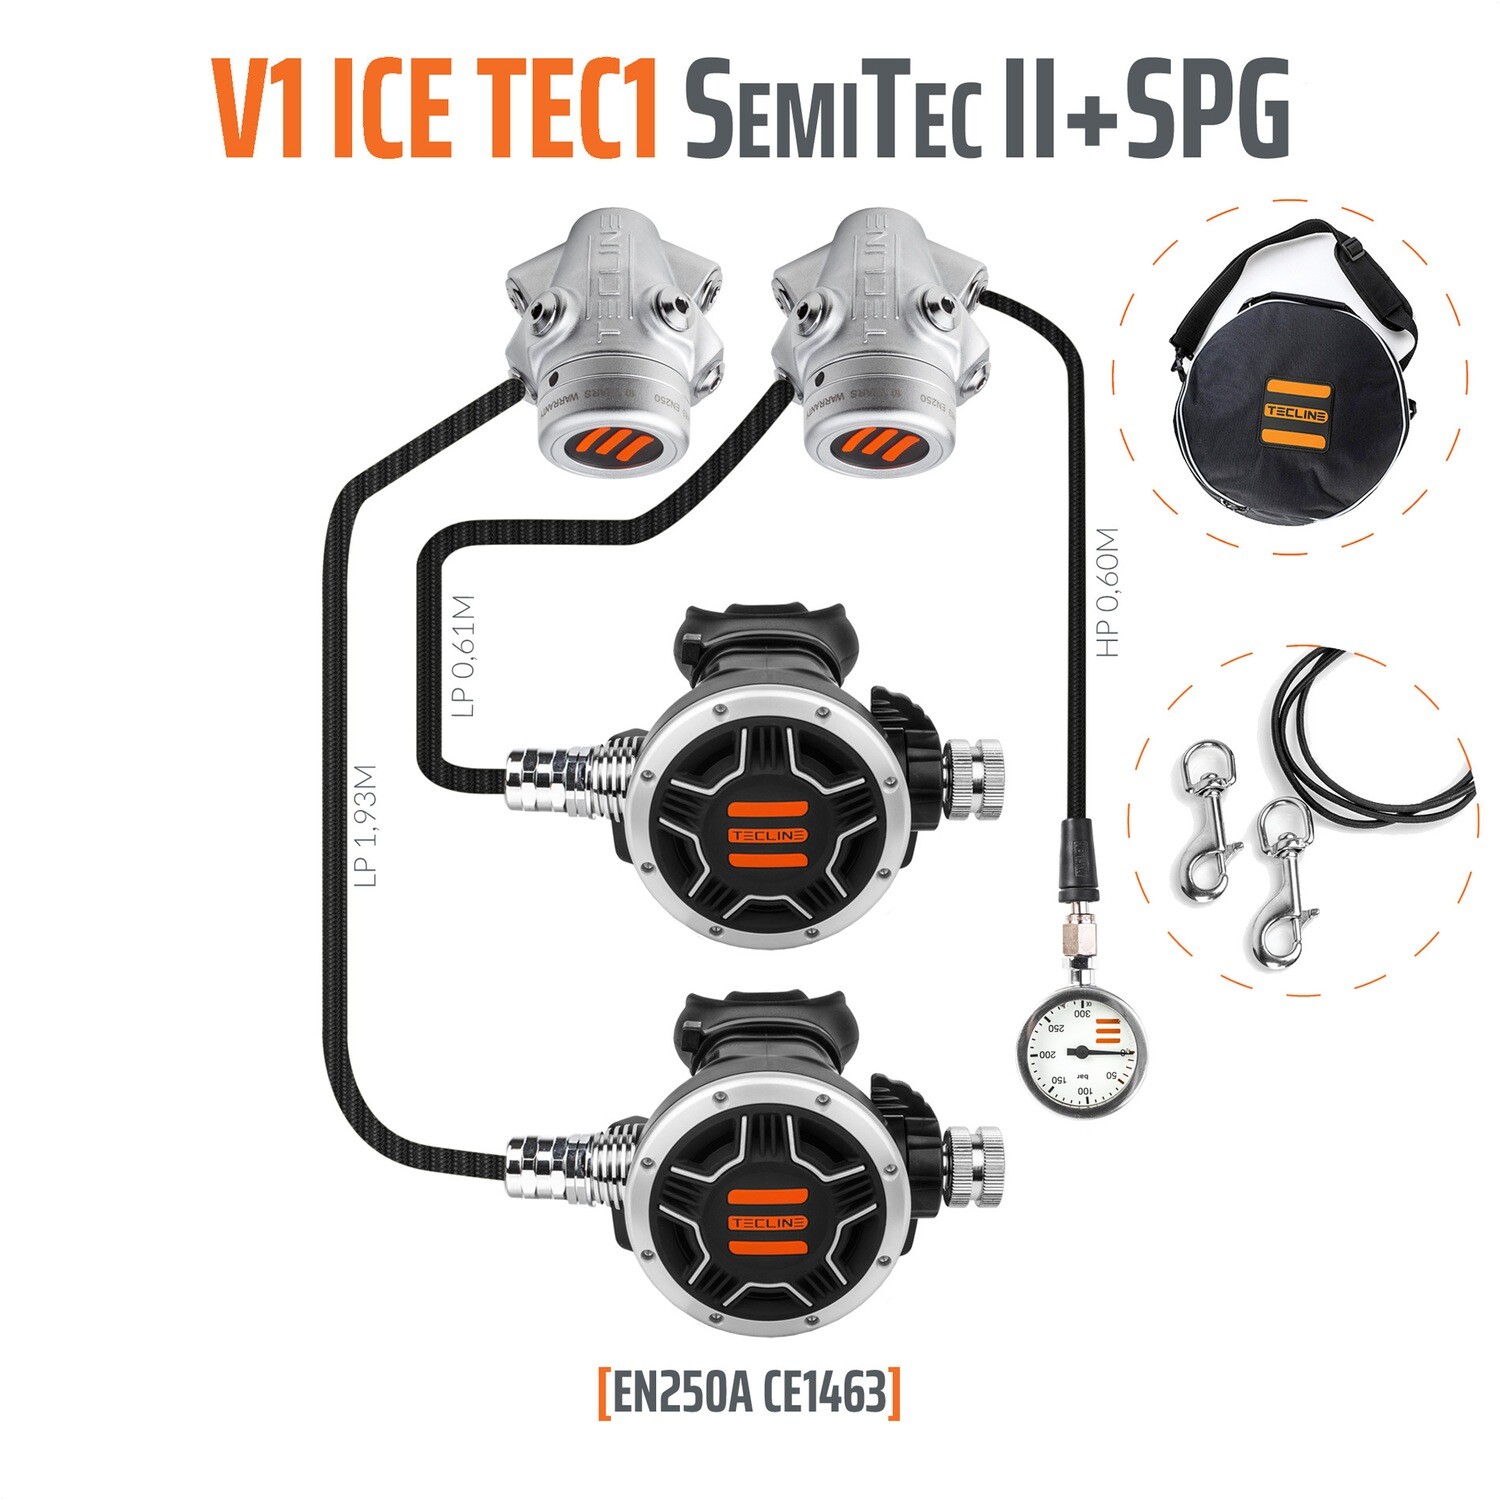 regulator V1-TEC1 semi-tec 2 SET